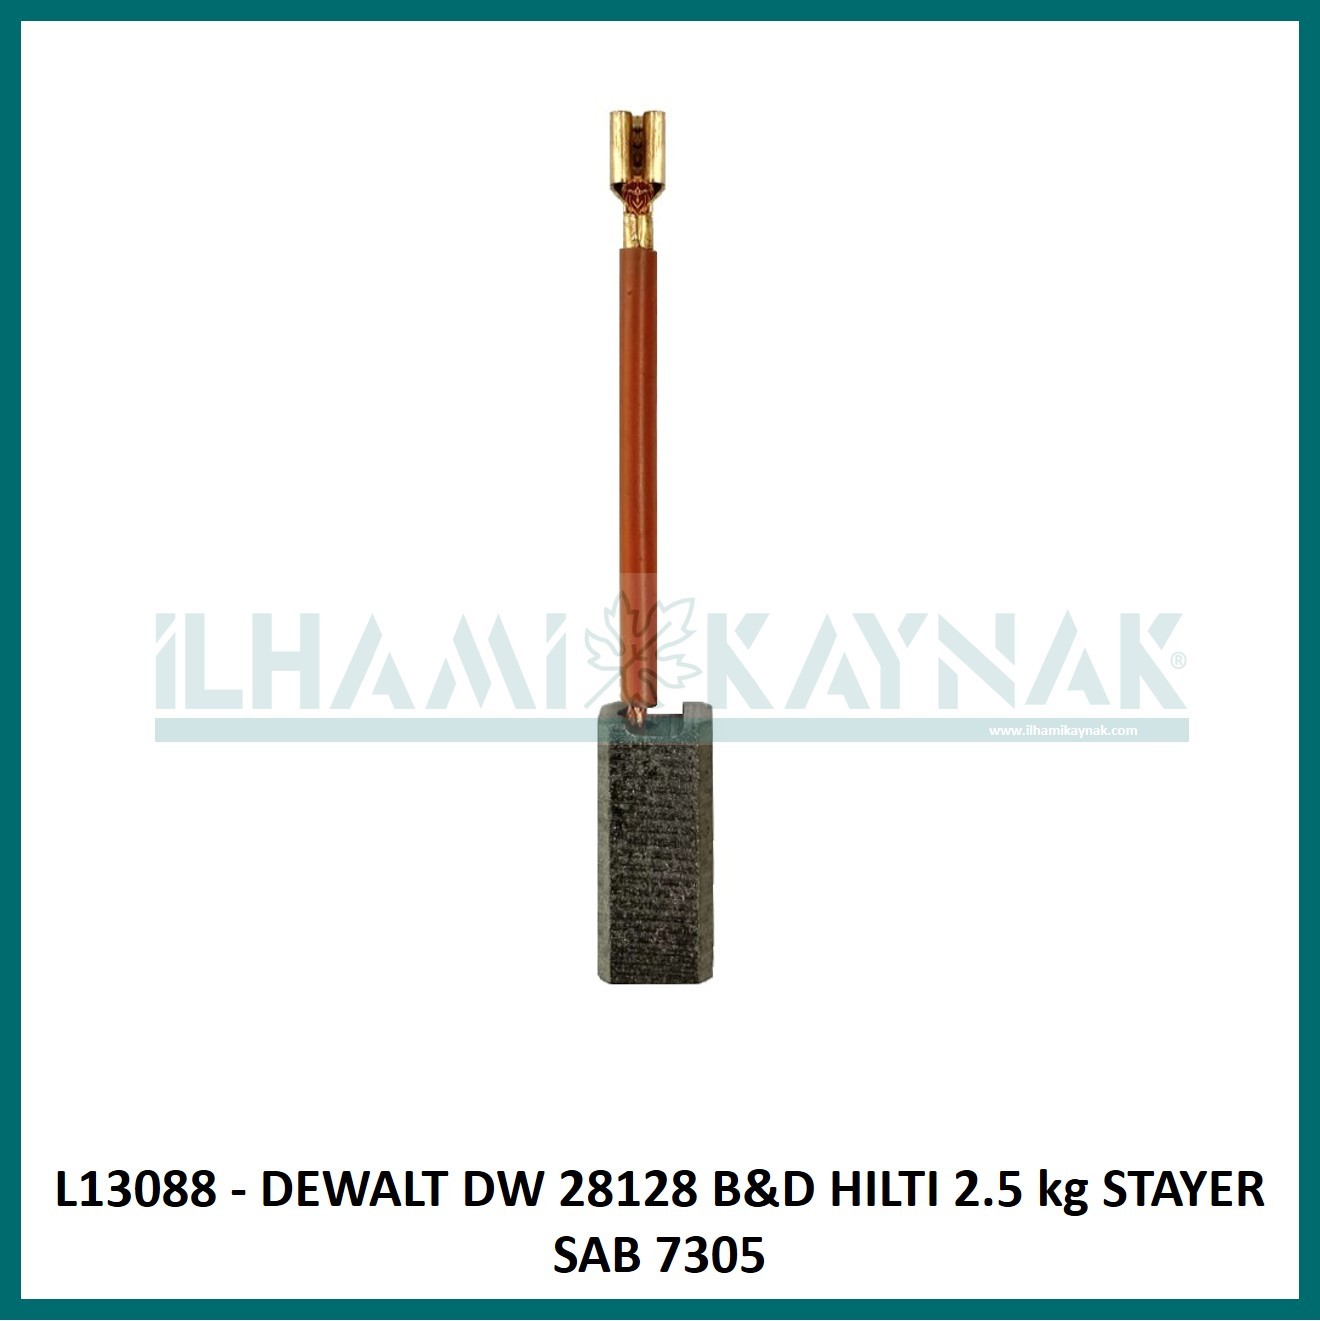 L13088 - DEWALT DW 28128 B&D HILTI 2.5 kg STAYER SAB 7305 - 6*8*18 mm - Minimum Satın Alım: 10 Adet.